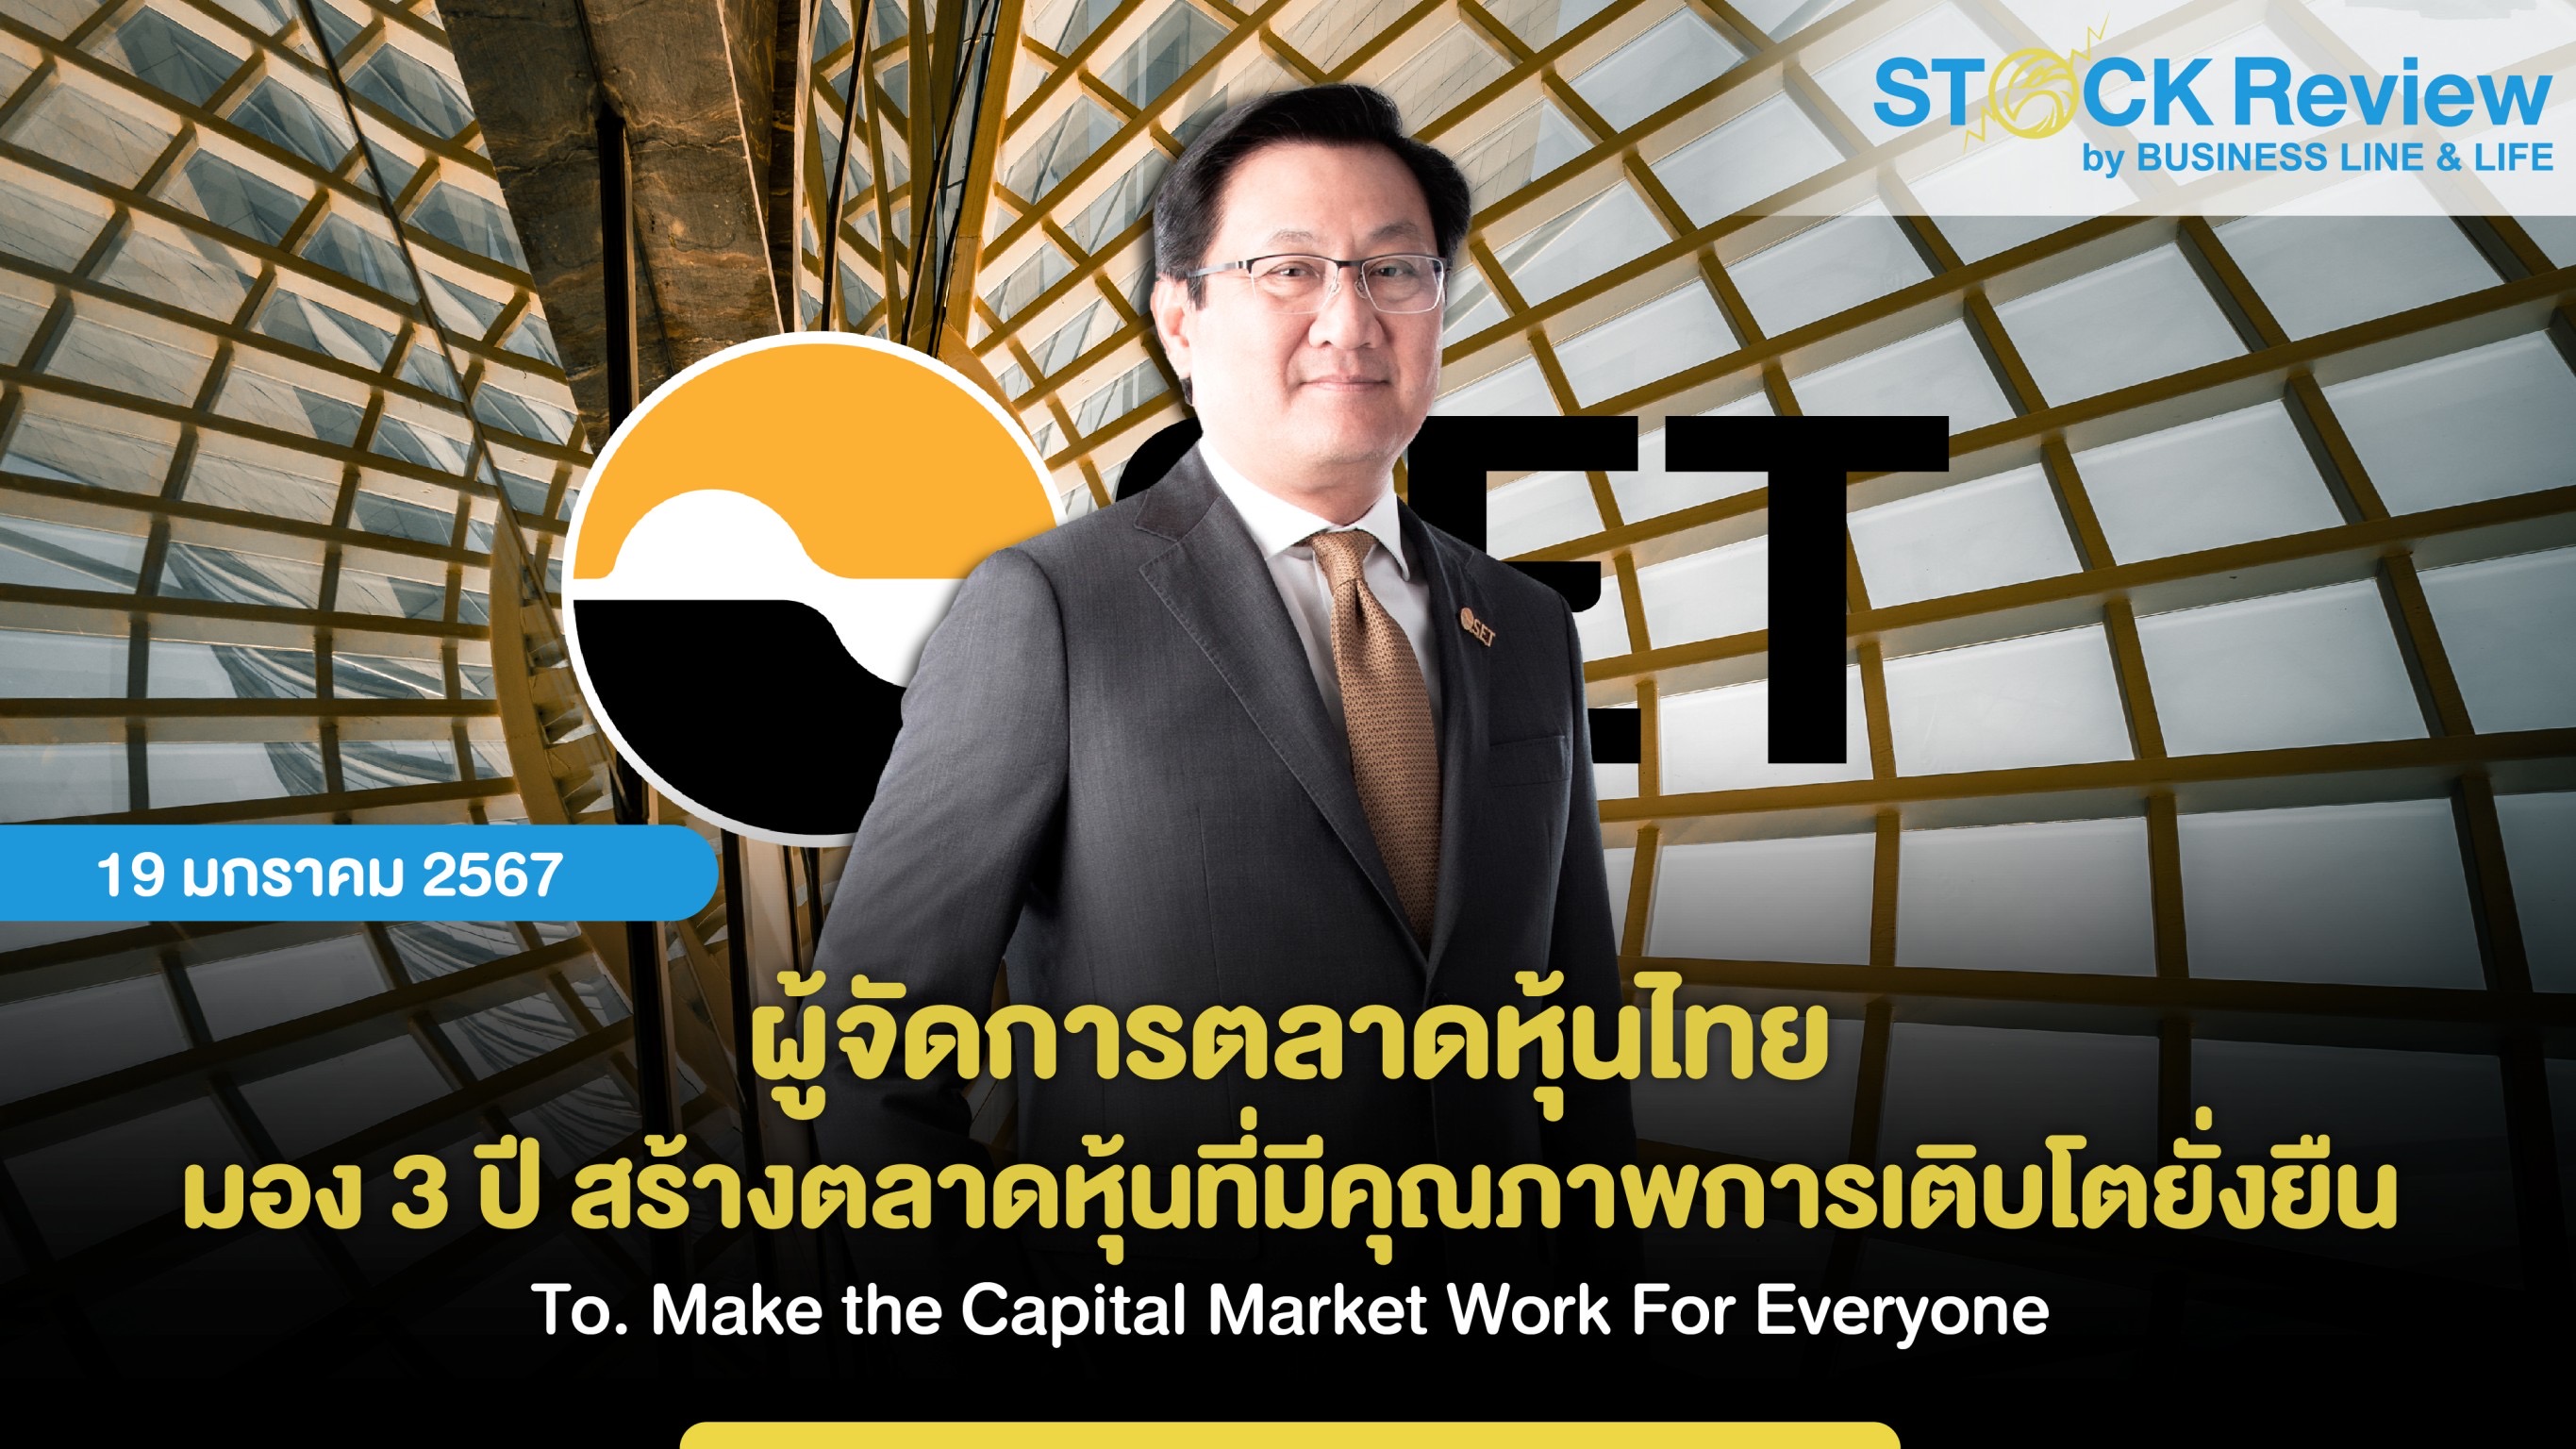 ผู้จัดการตลาดหุ้นไทย มอง 3 ปี สร้างตลาดหุ้นที่มีคุณภาพการเติบโตยั่งยืน To. Make the Capital Market Work For Everyone